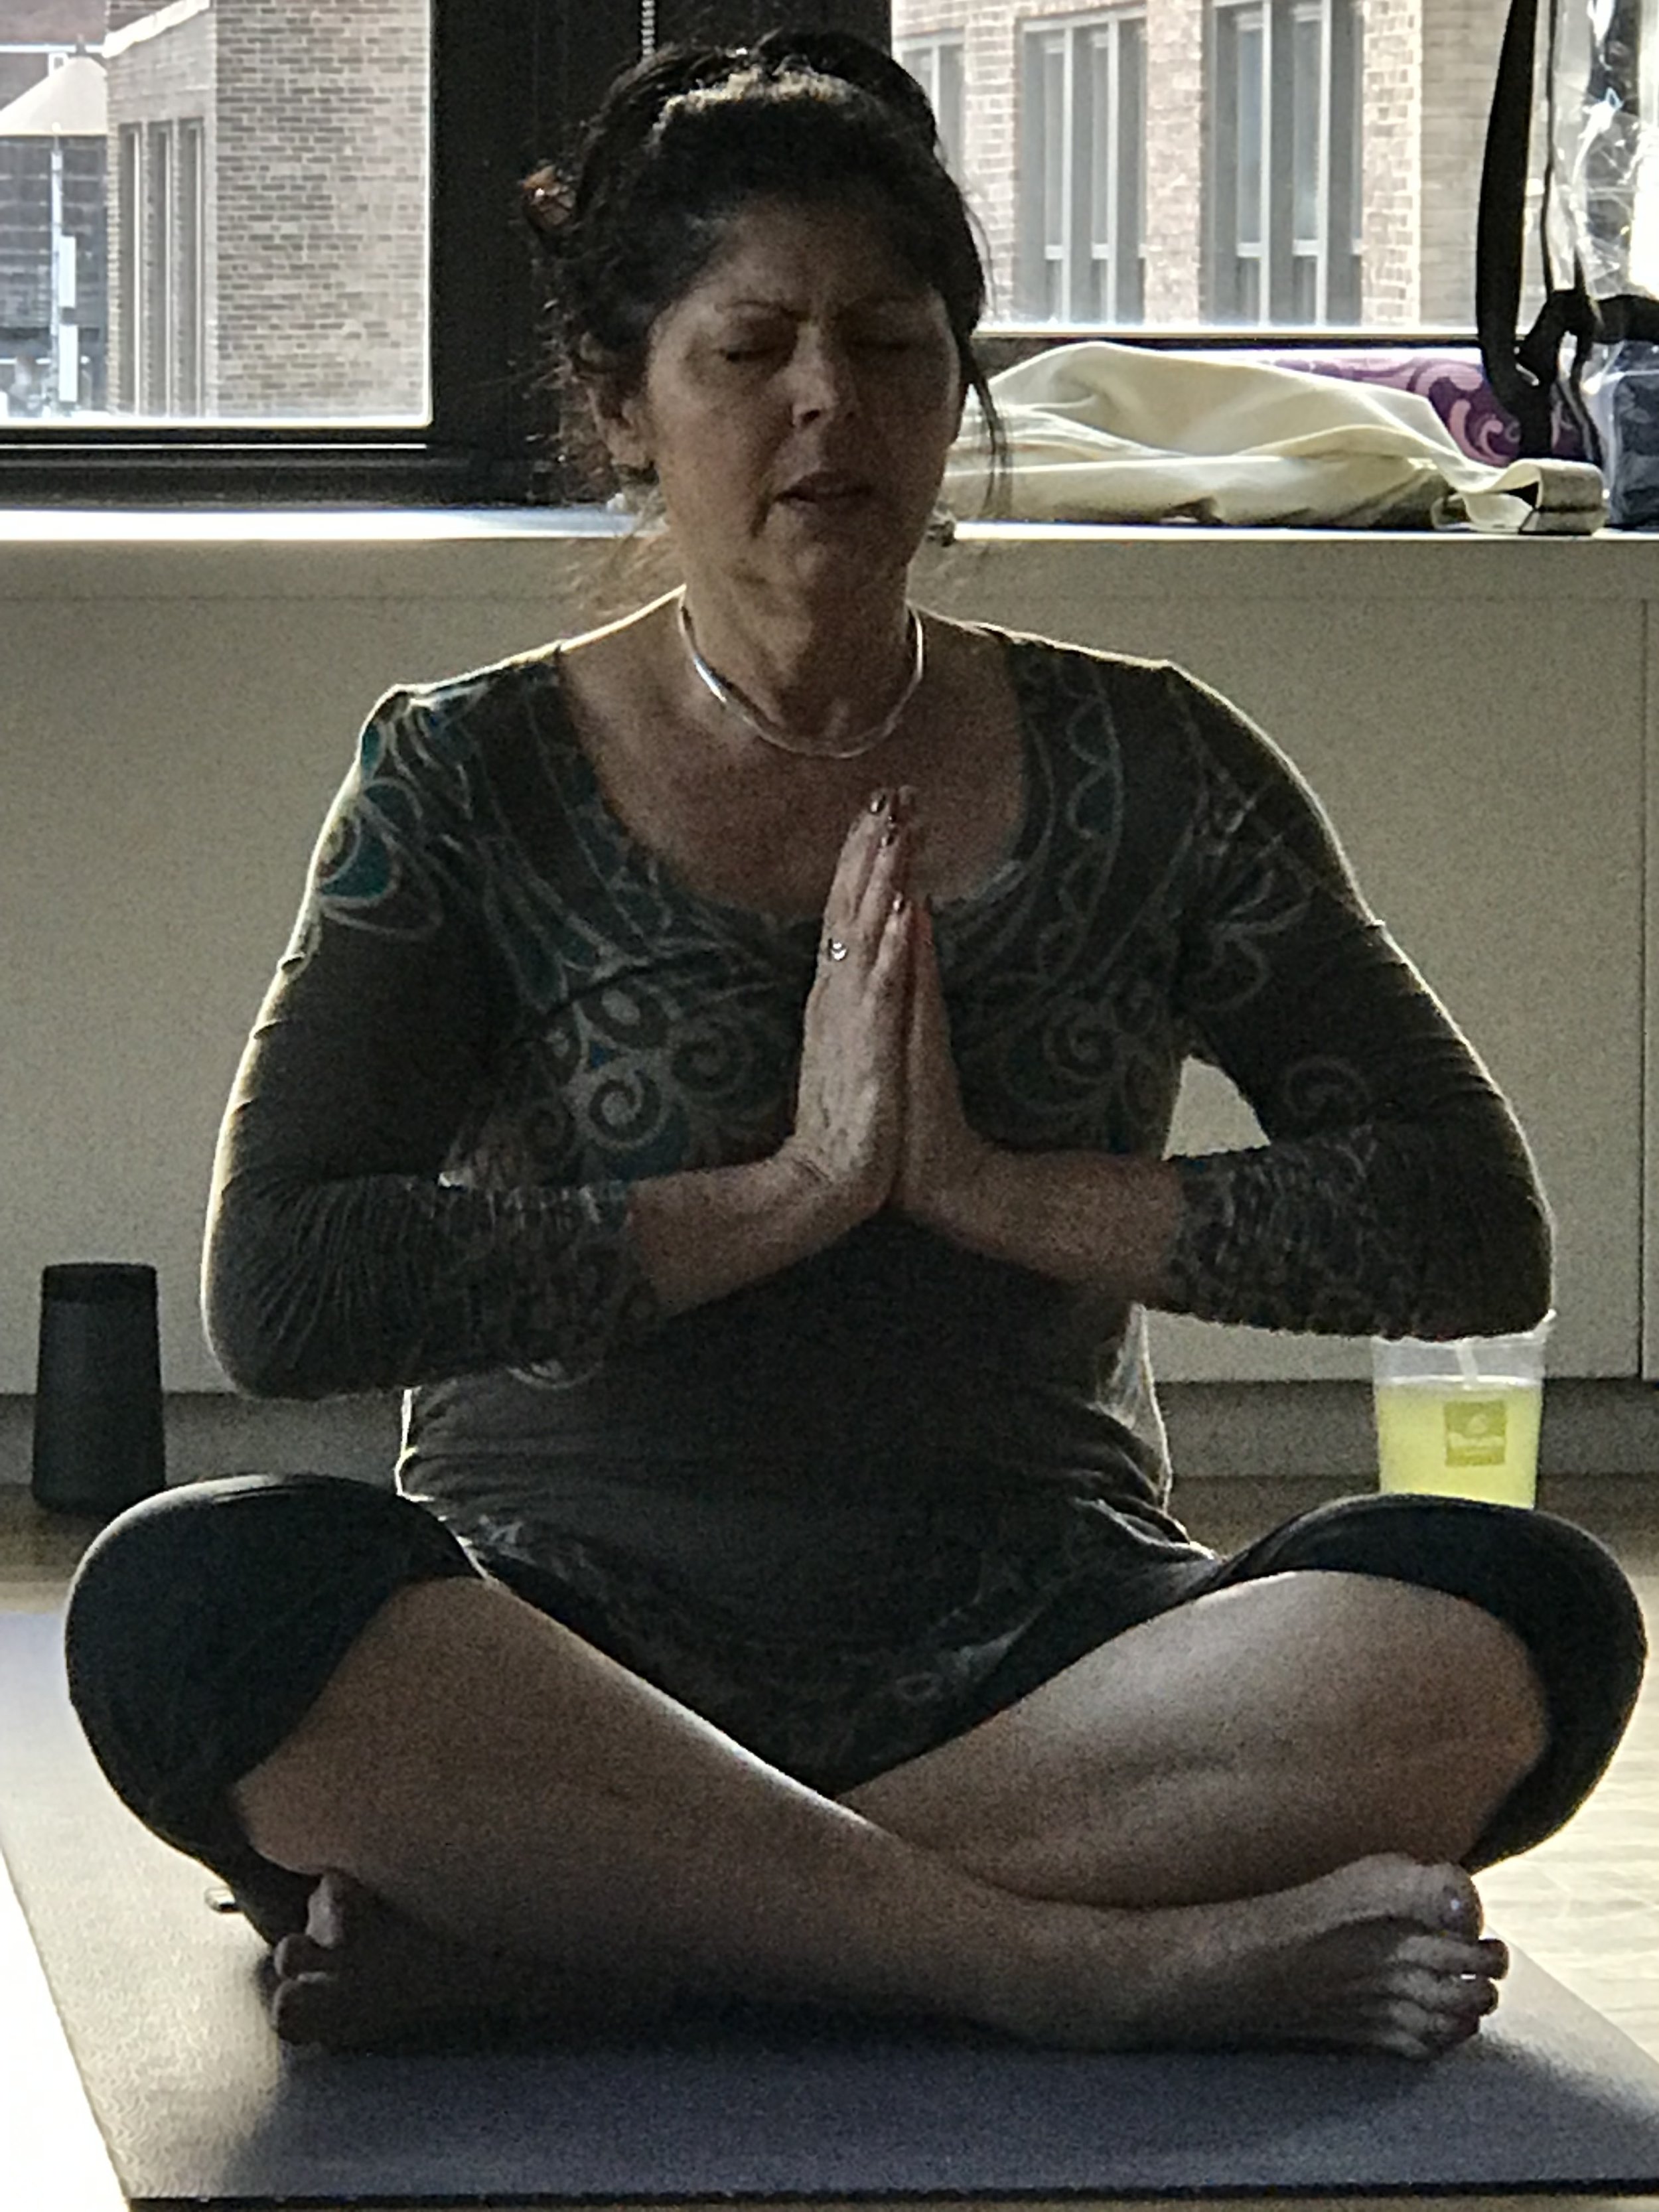 Barbara meditation.JPG